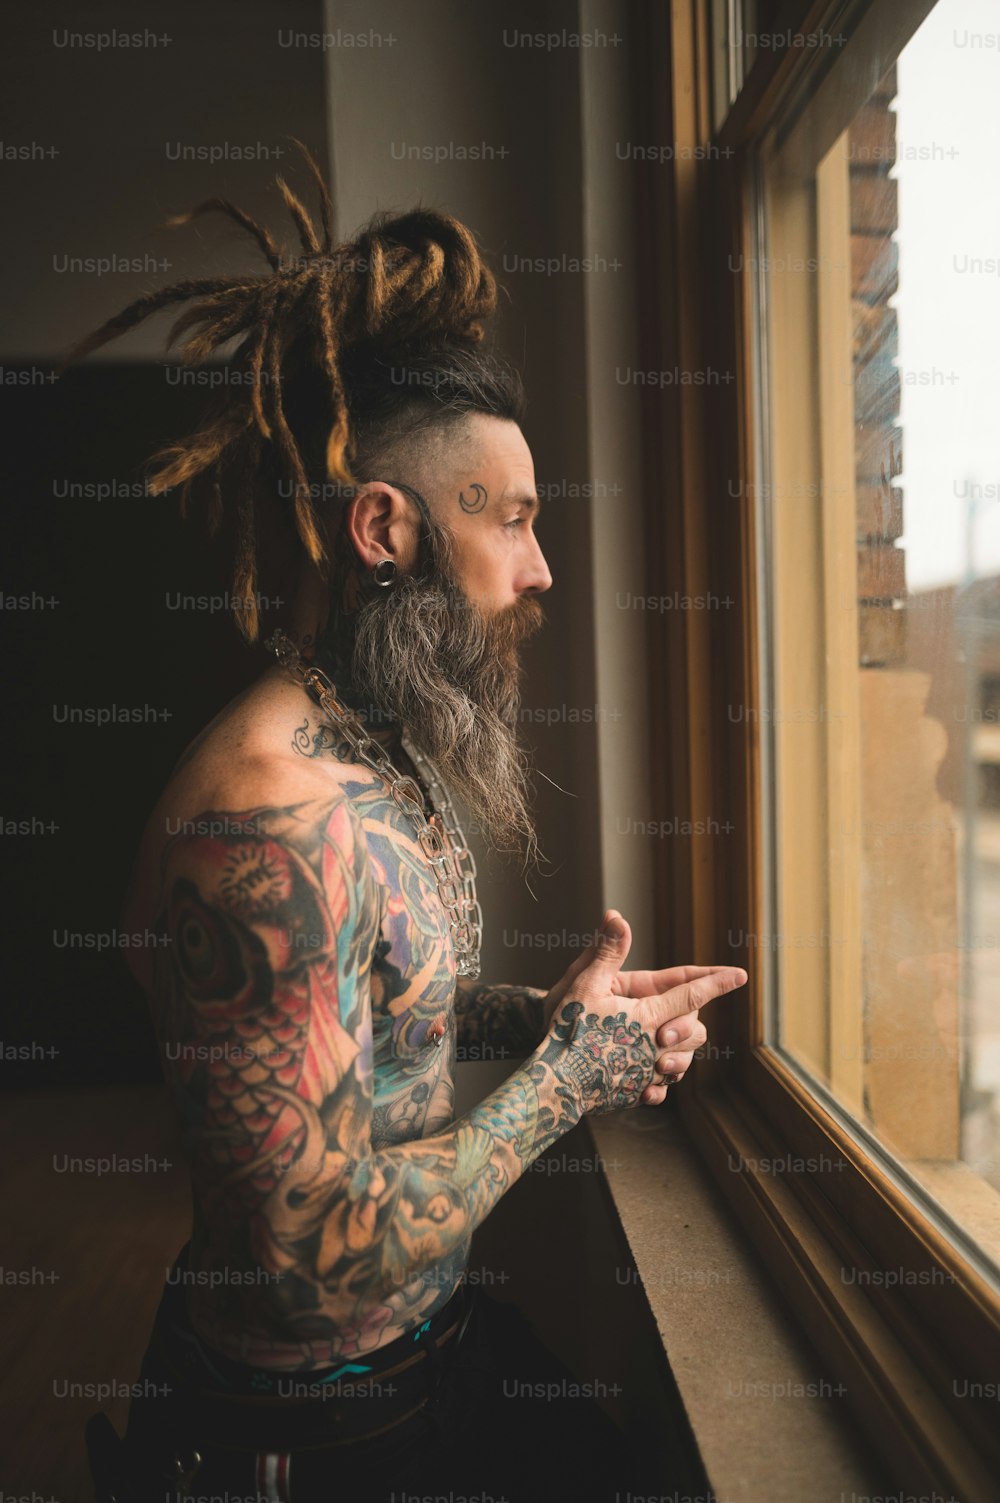 Un homme avec des dreadlocks regardant par une fenêtre